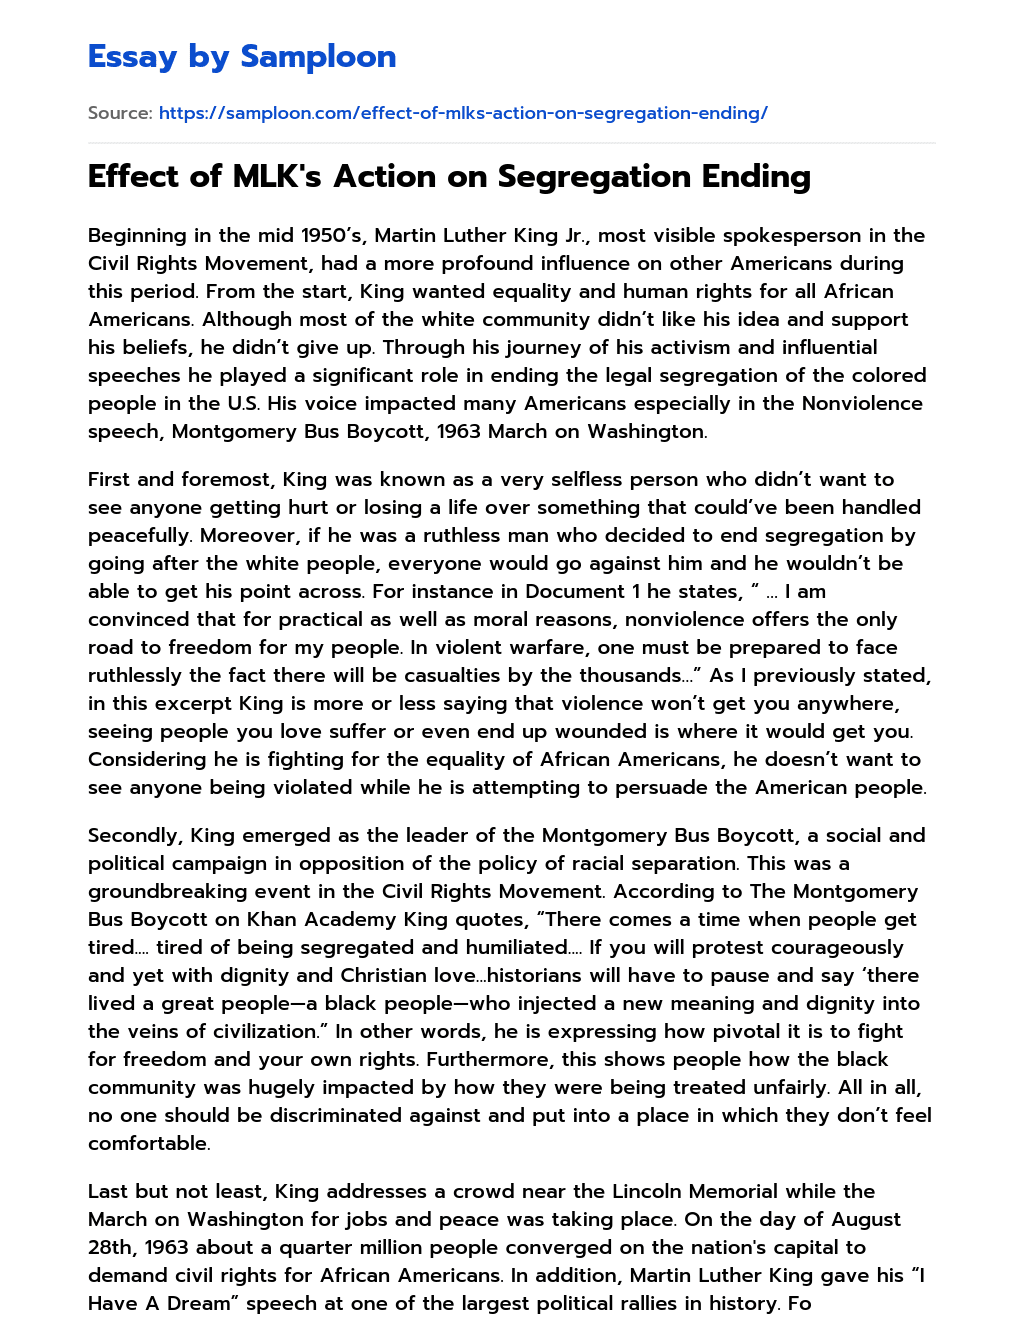 Effect of MLK’s Action on Segregation Ending essay